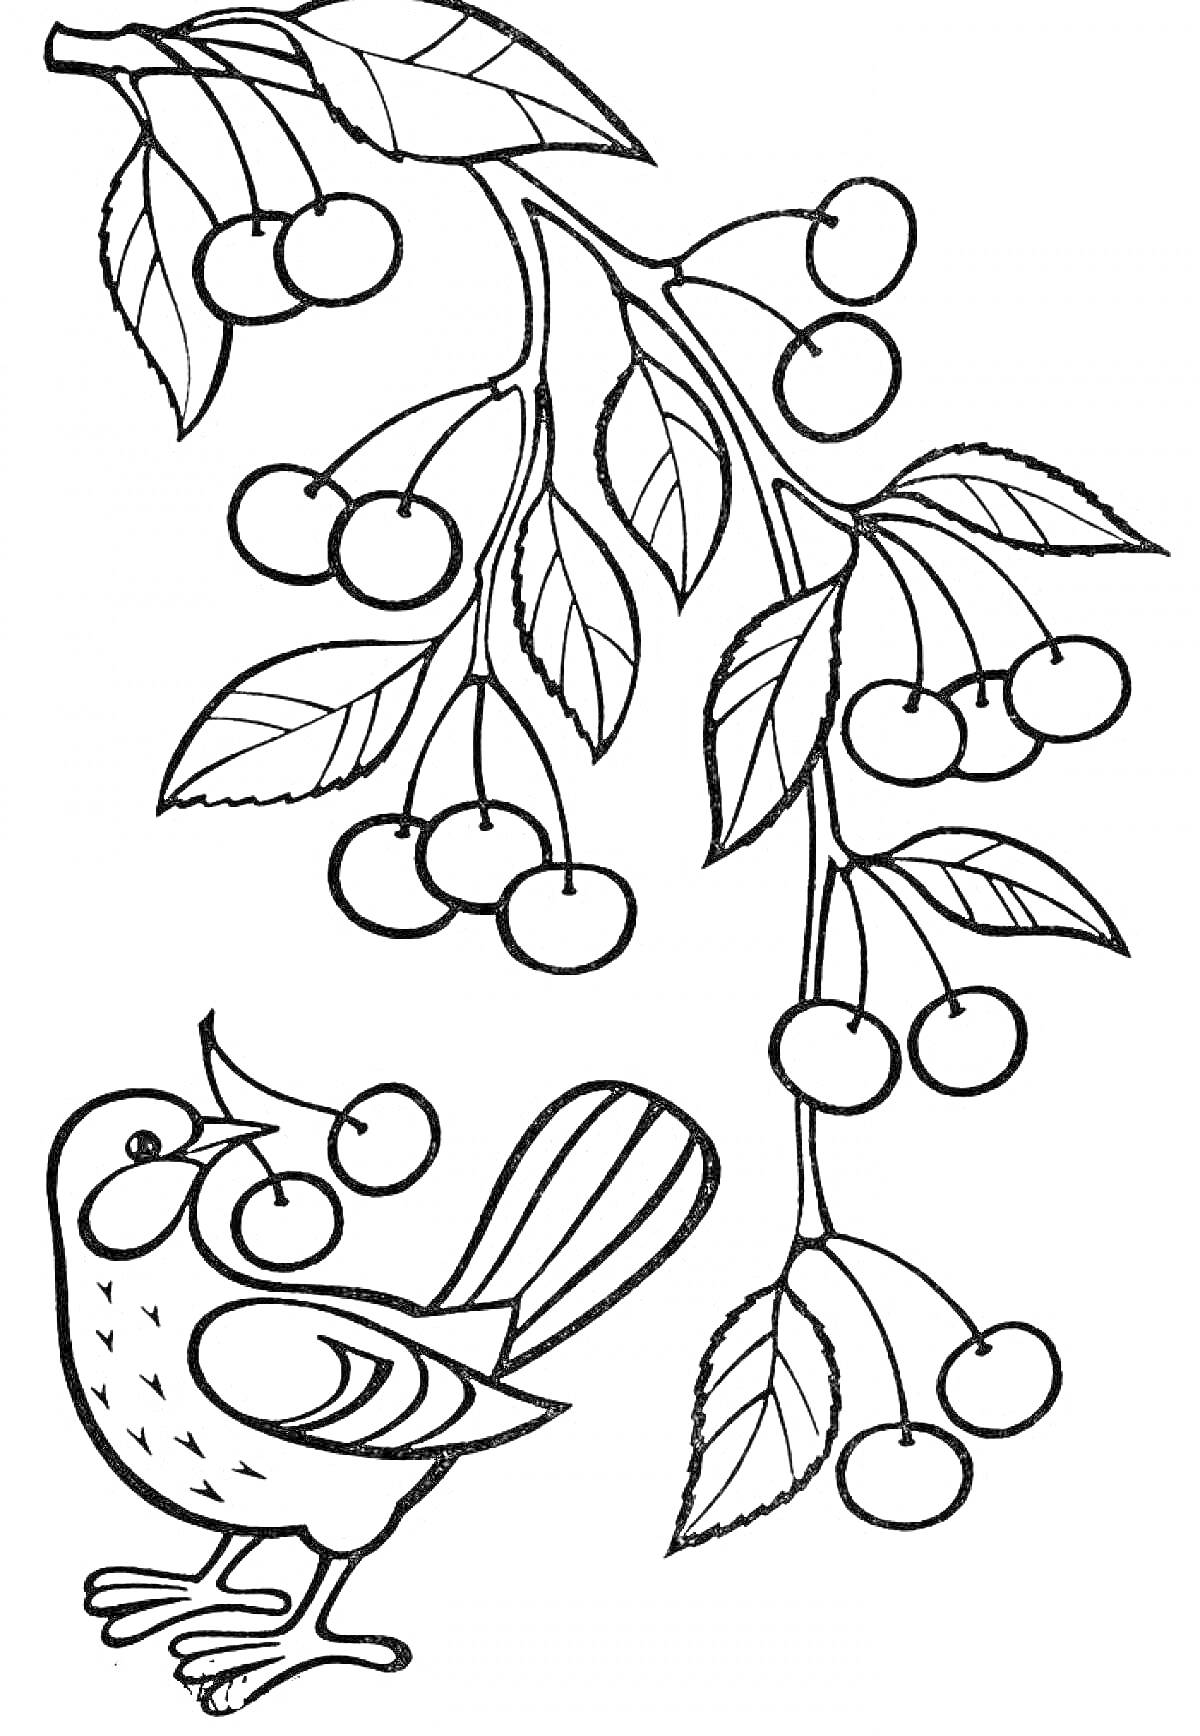 Ветка с листьями и ягодами, птица, держащая ягоду